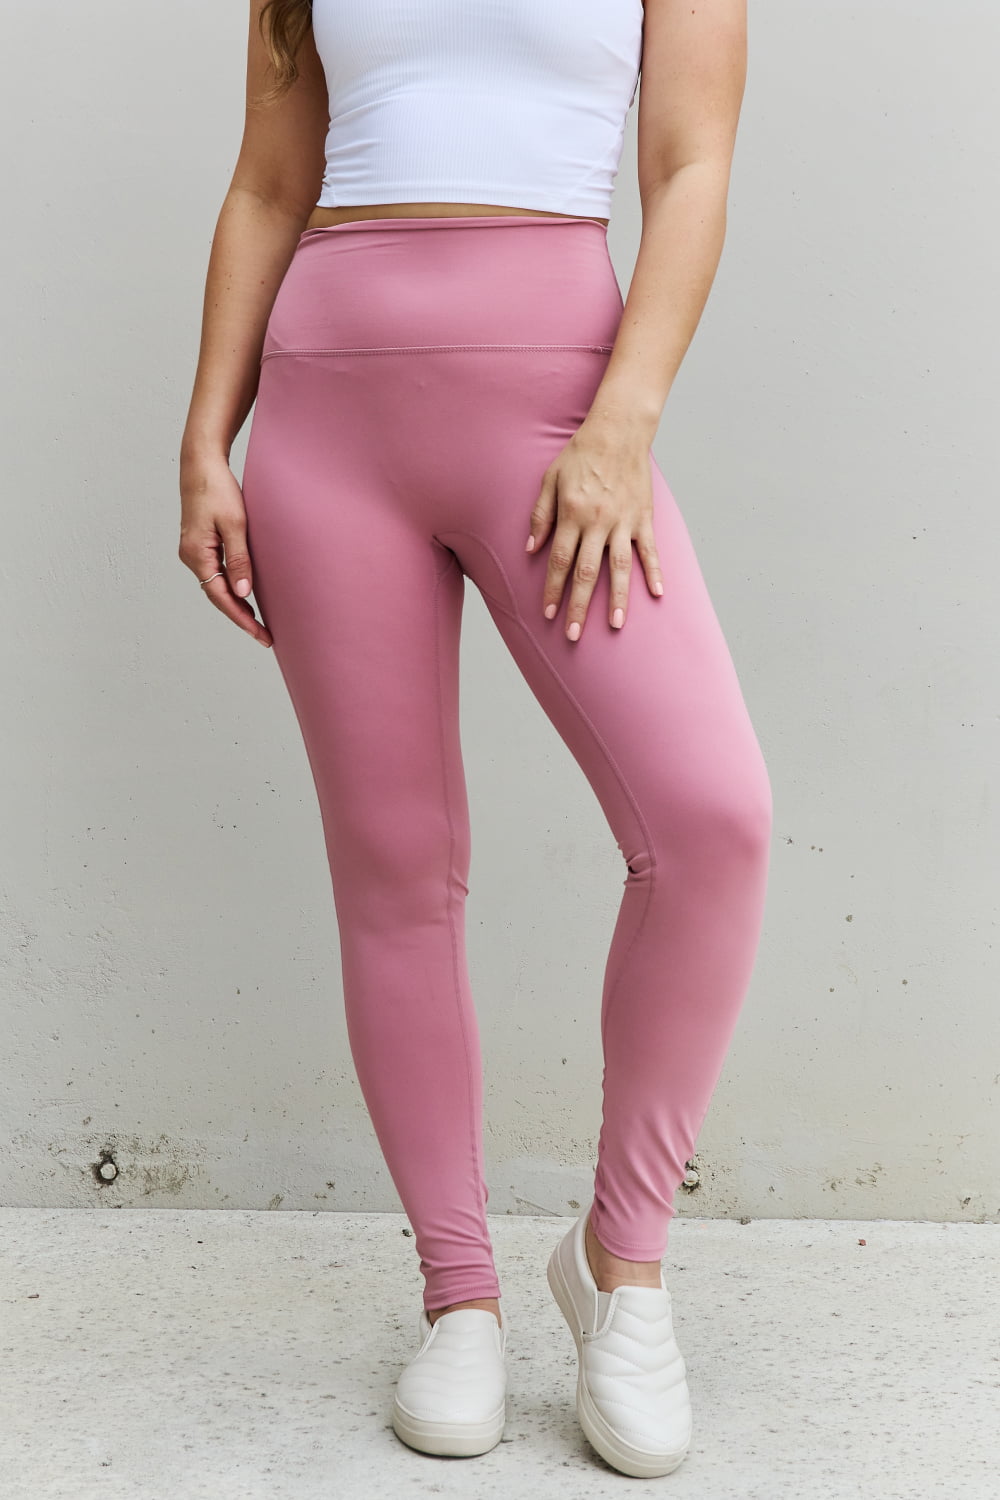 Zenana Fit For You Full Size High Waist Active Leggings in Light Rose - pvmark